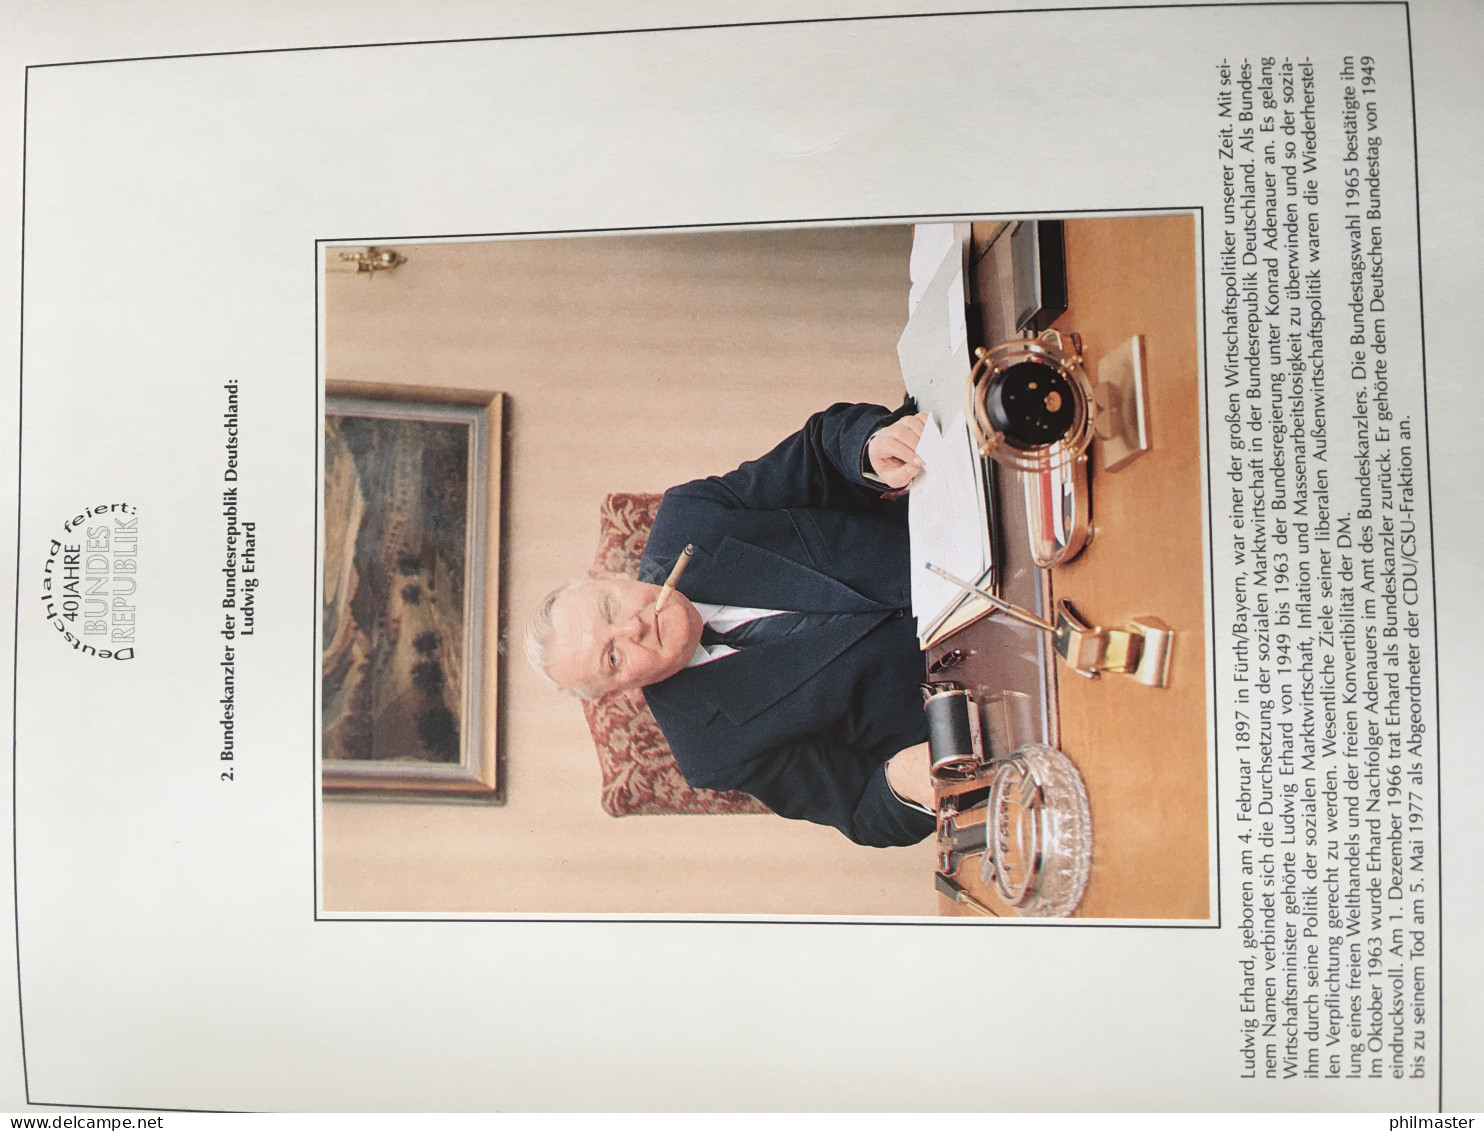 40 Jahre Bundesrepublik - Motiv-Sammlung in zwei Ringbindern, 120 Seiten